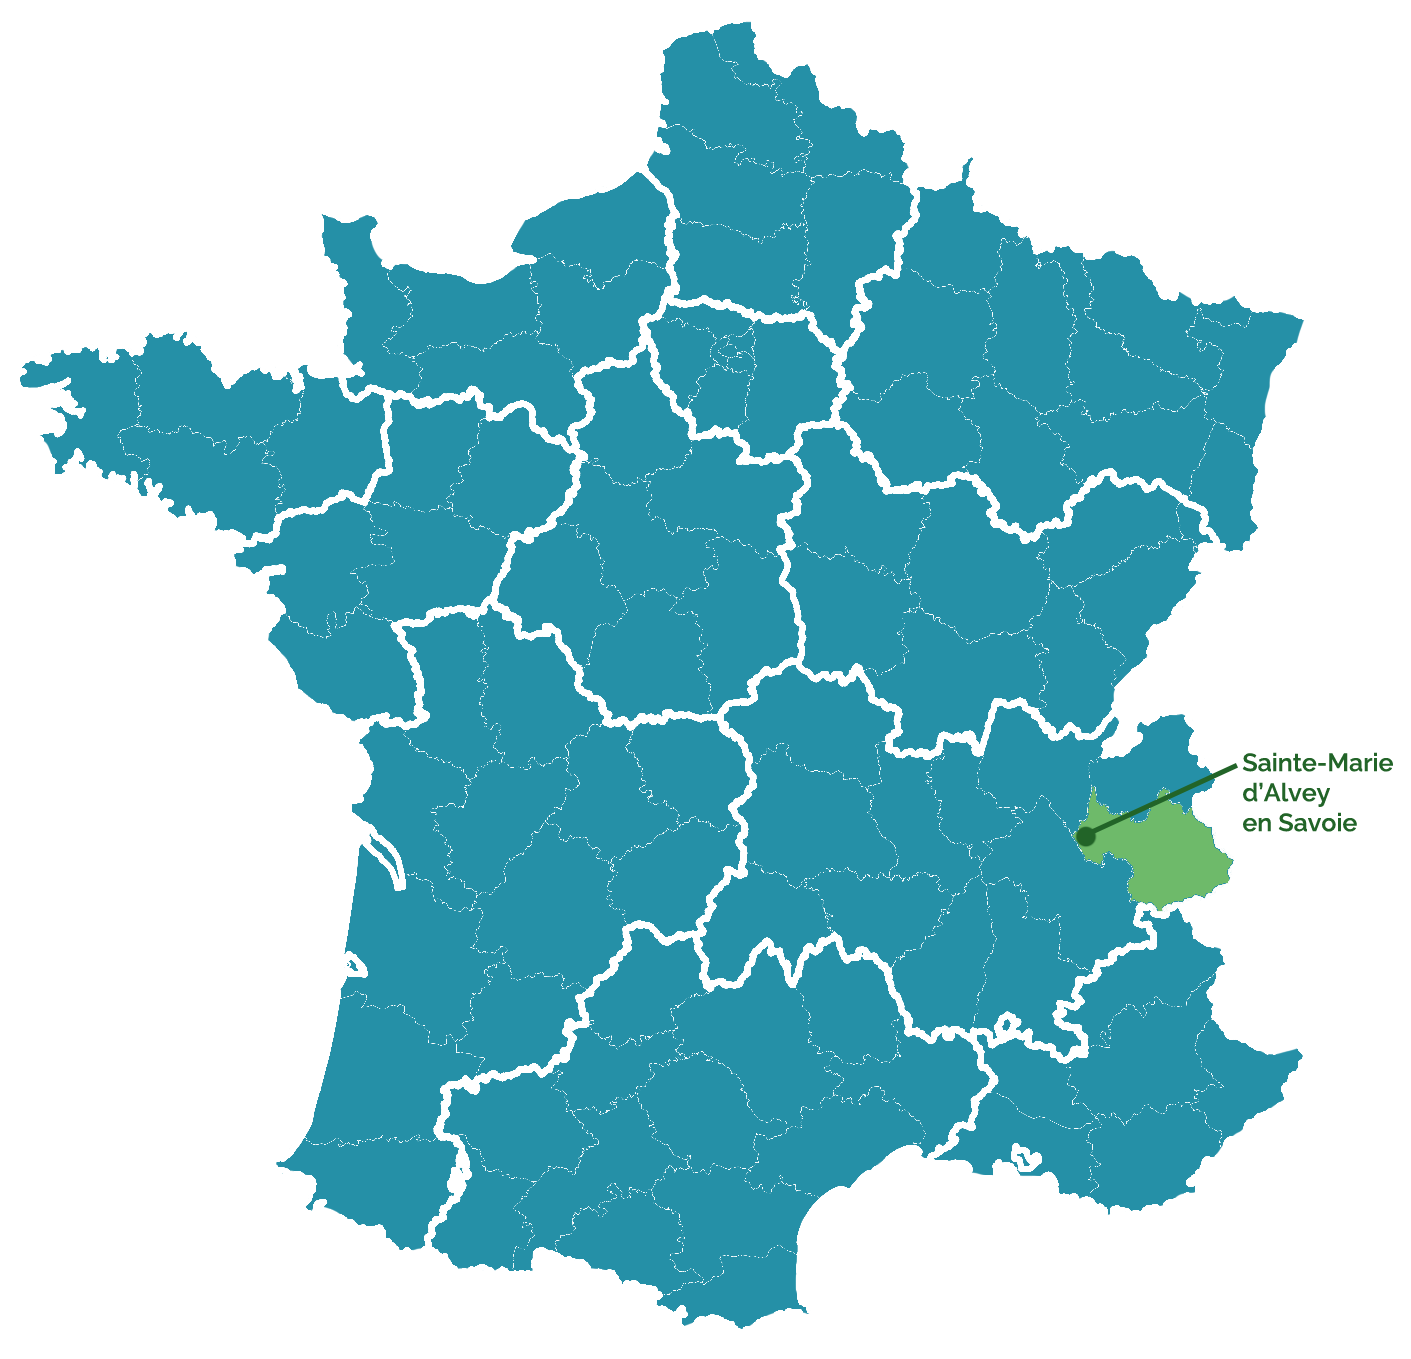 Carte de la France, Sainte-Marie d'Alvey, en Savoie